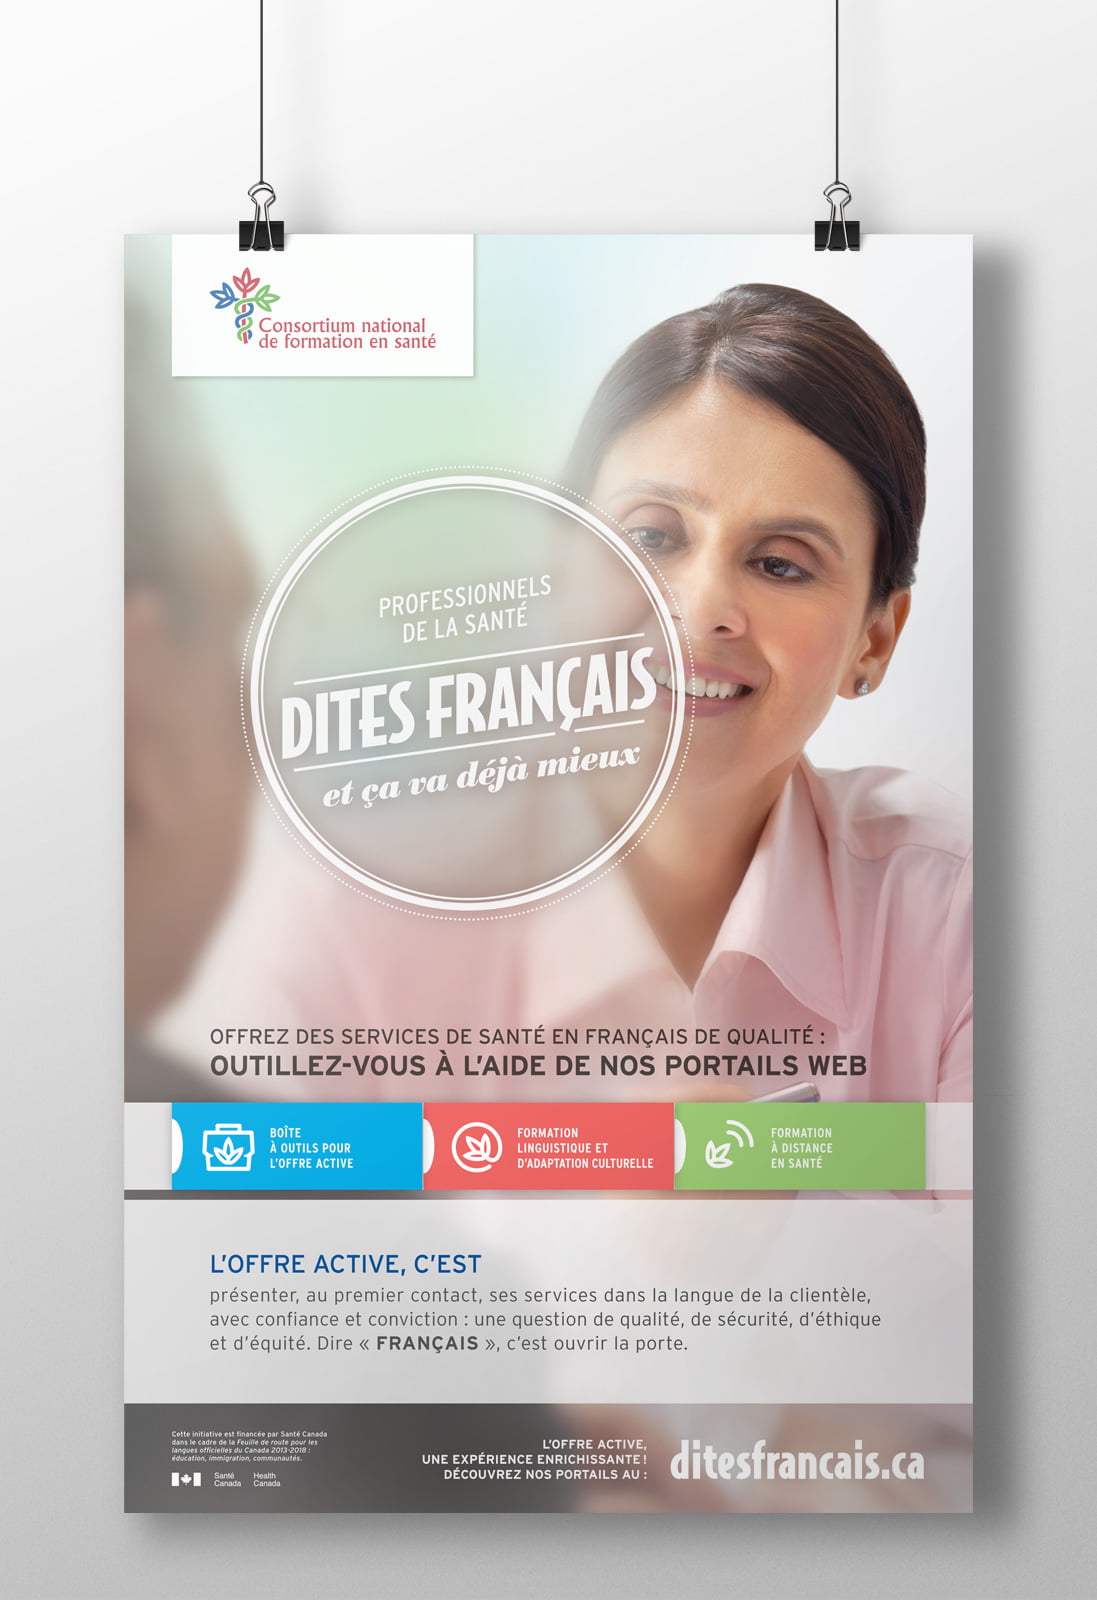 CNFS - Stratégie de marketing et campagne de promotion « Dites français »